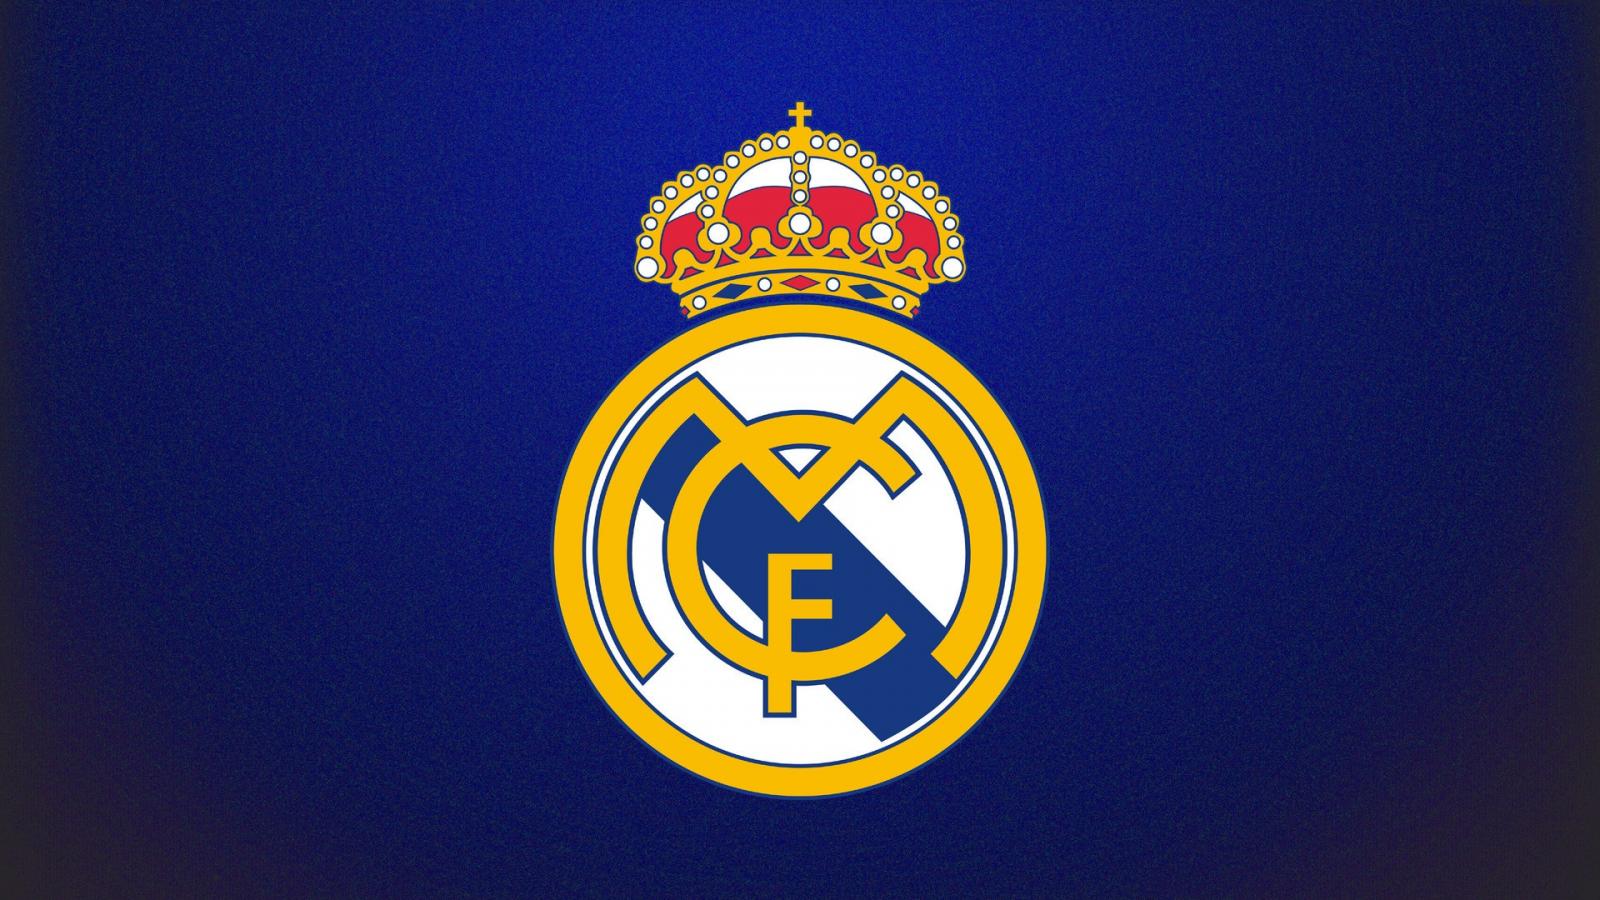 Prediksi Liga Spanyol - Real Madrid Logo - Hasil Prediksi